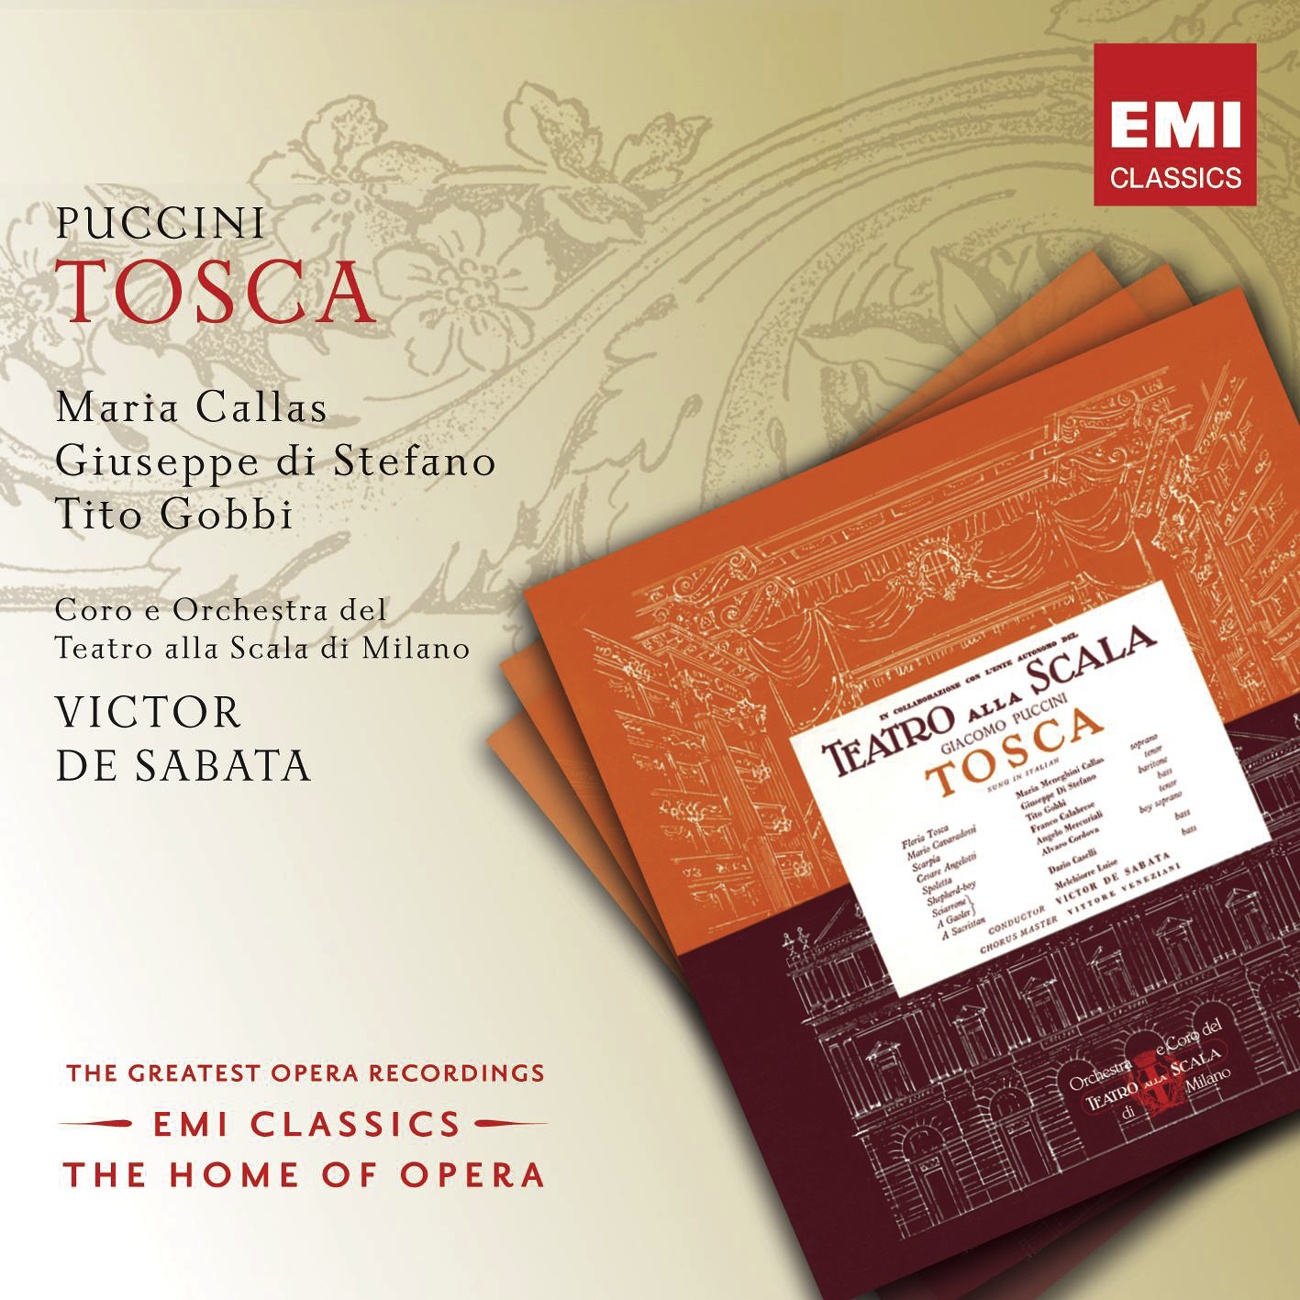 Tosca (2002 Digital Remaster), ACT TWO: Or gli perdono! (Tosca)